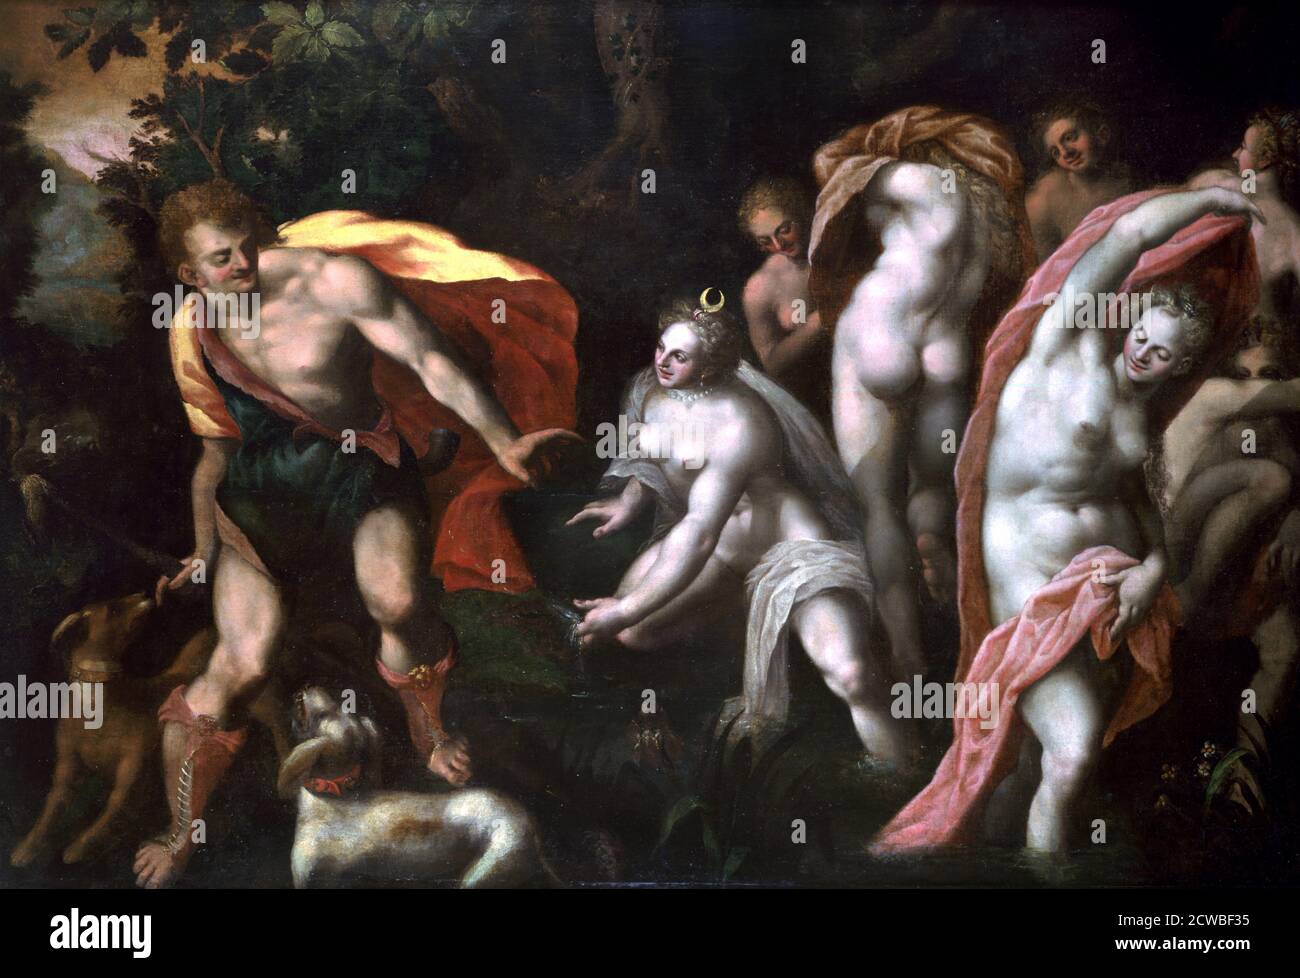 Diane und Acteon', c1584-1609 Künstler: Joseph Heintz der Ältere. In der römischen Mythologie war Diana die jungfräuliche Göttin der Jagd, das Äquivalent der griechischen Göttin Artemis. Stockfoto